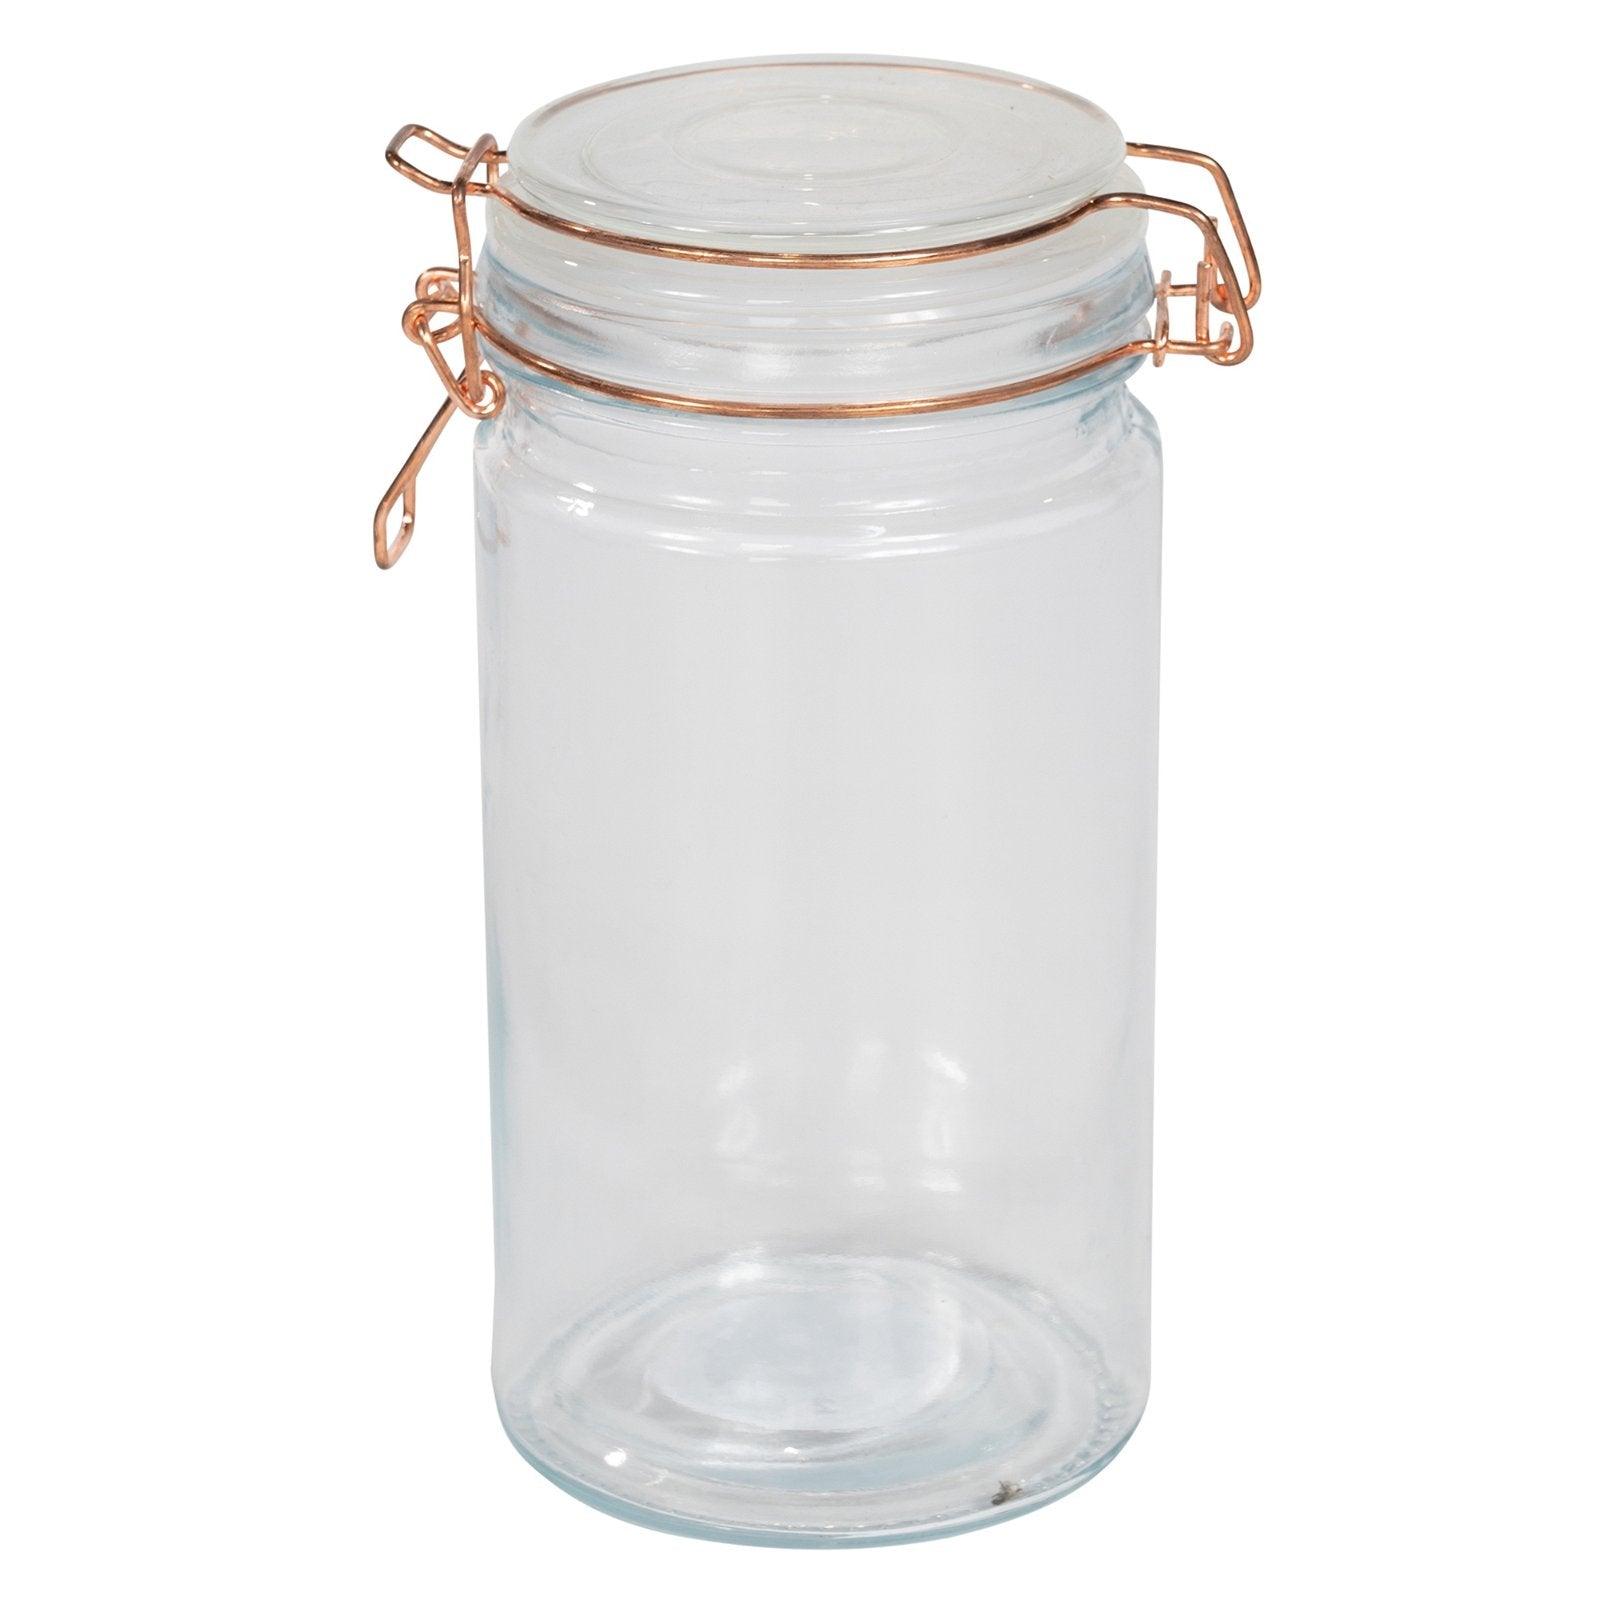 View Kitchen Storage Jar With Copper Clip 20cm information